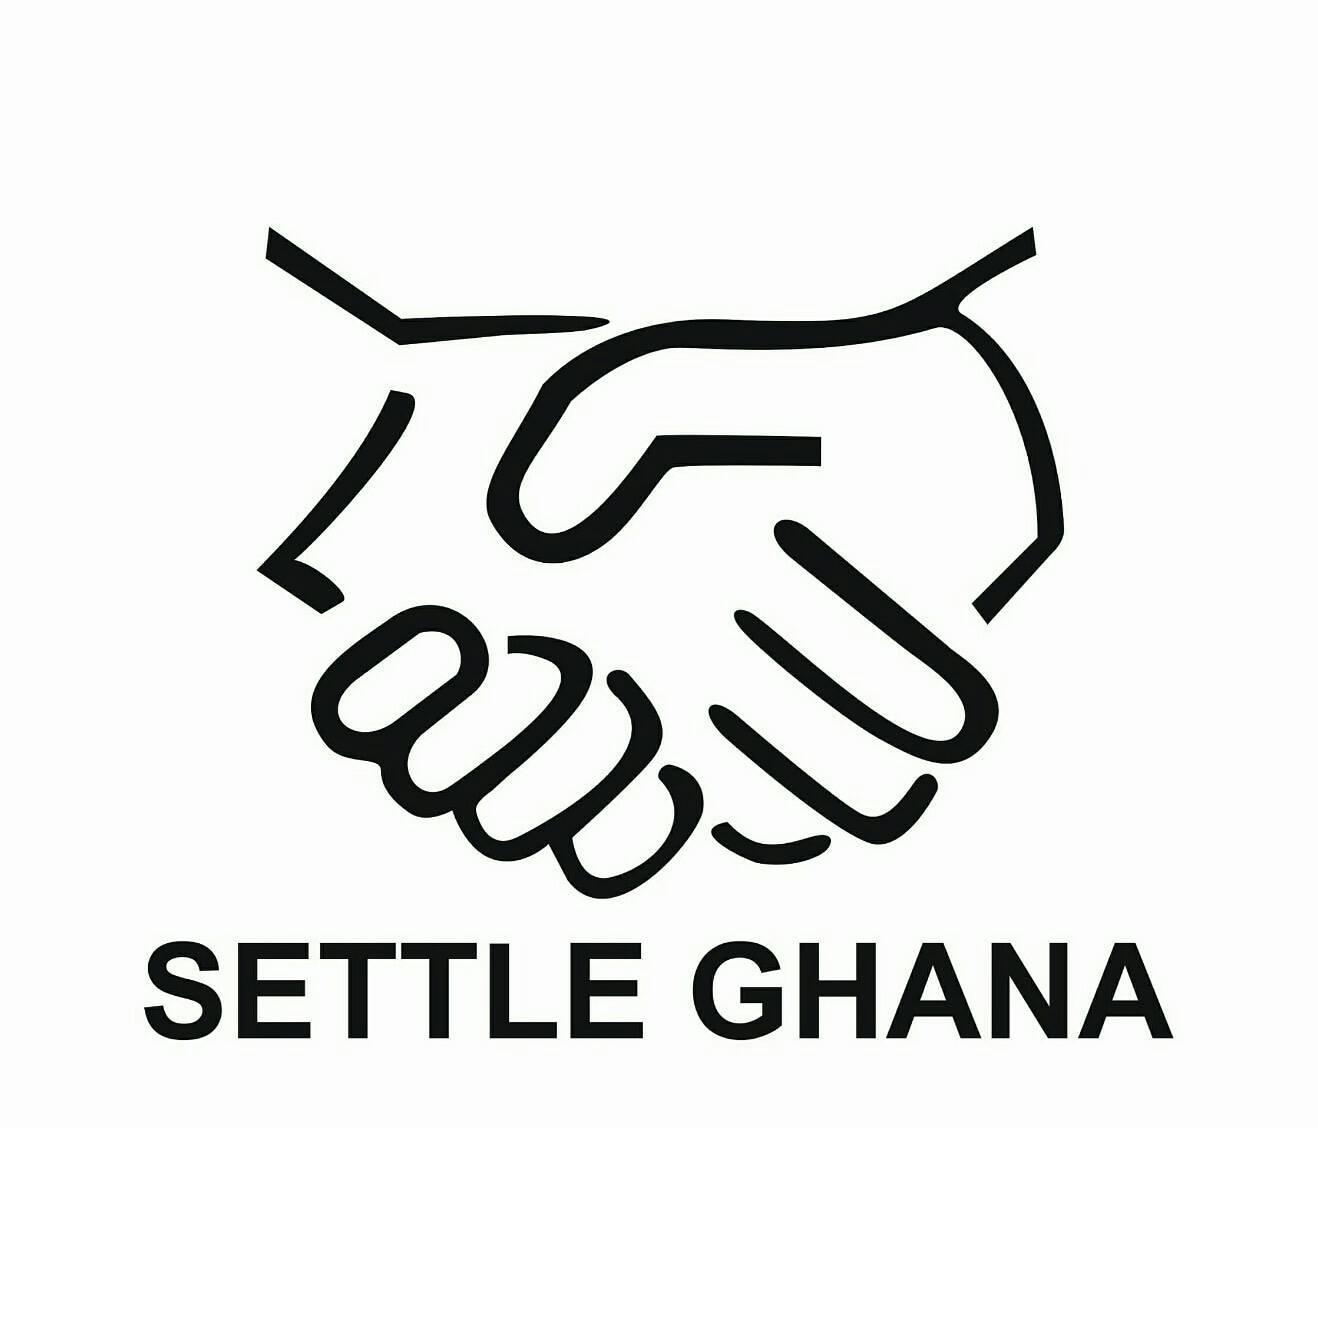 Settle Ghana